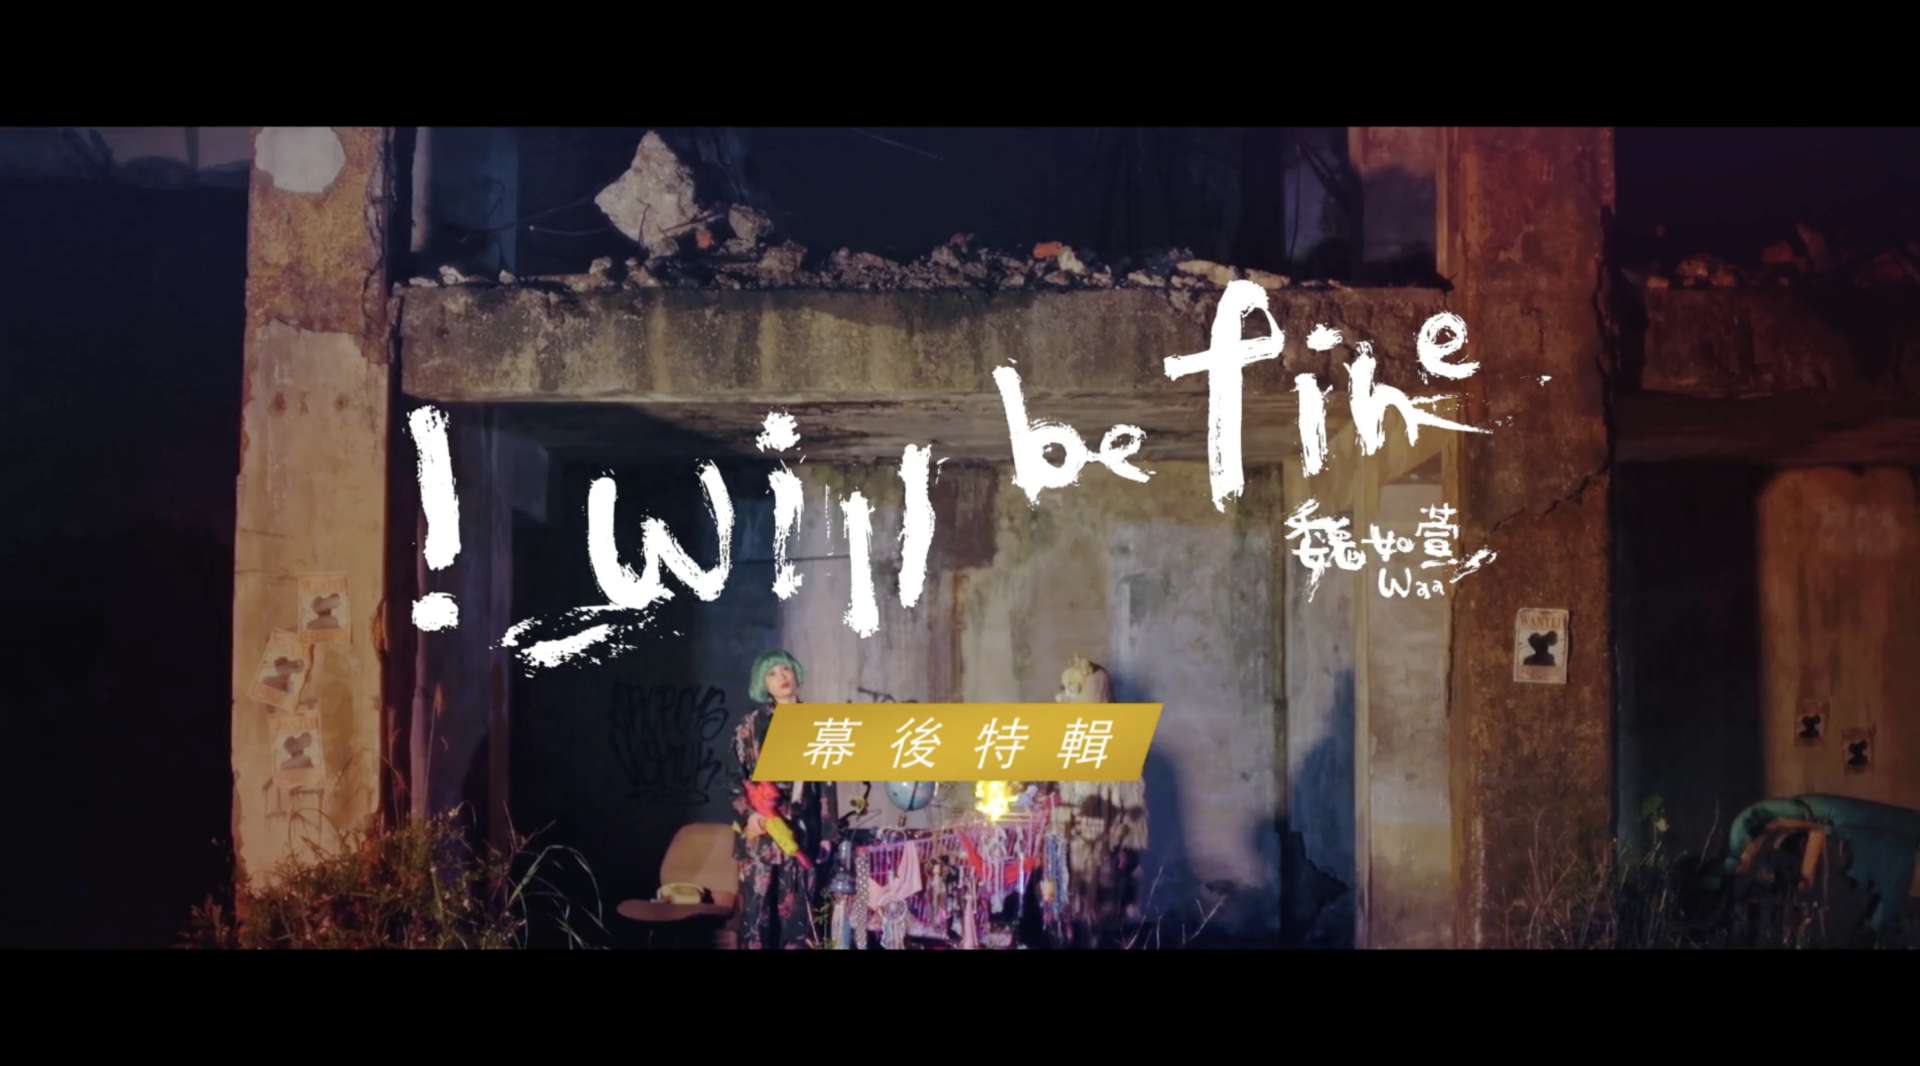 MV側拍花絮 - 魏如萱 waa wei [‭ ‬i‭ ‬will be fine‭ ‬]